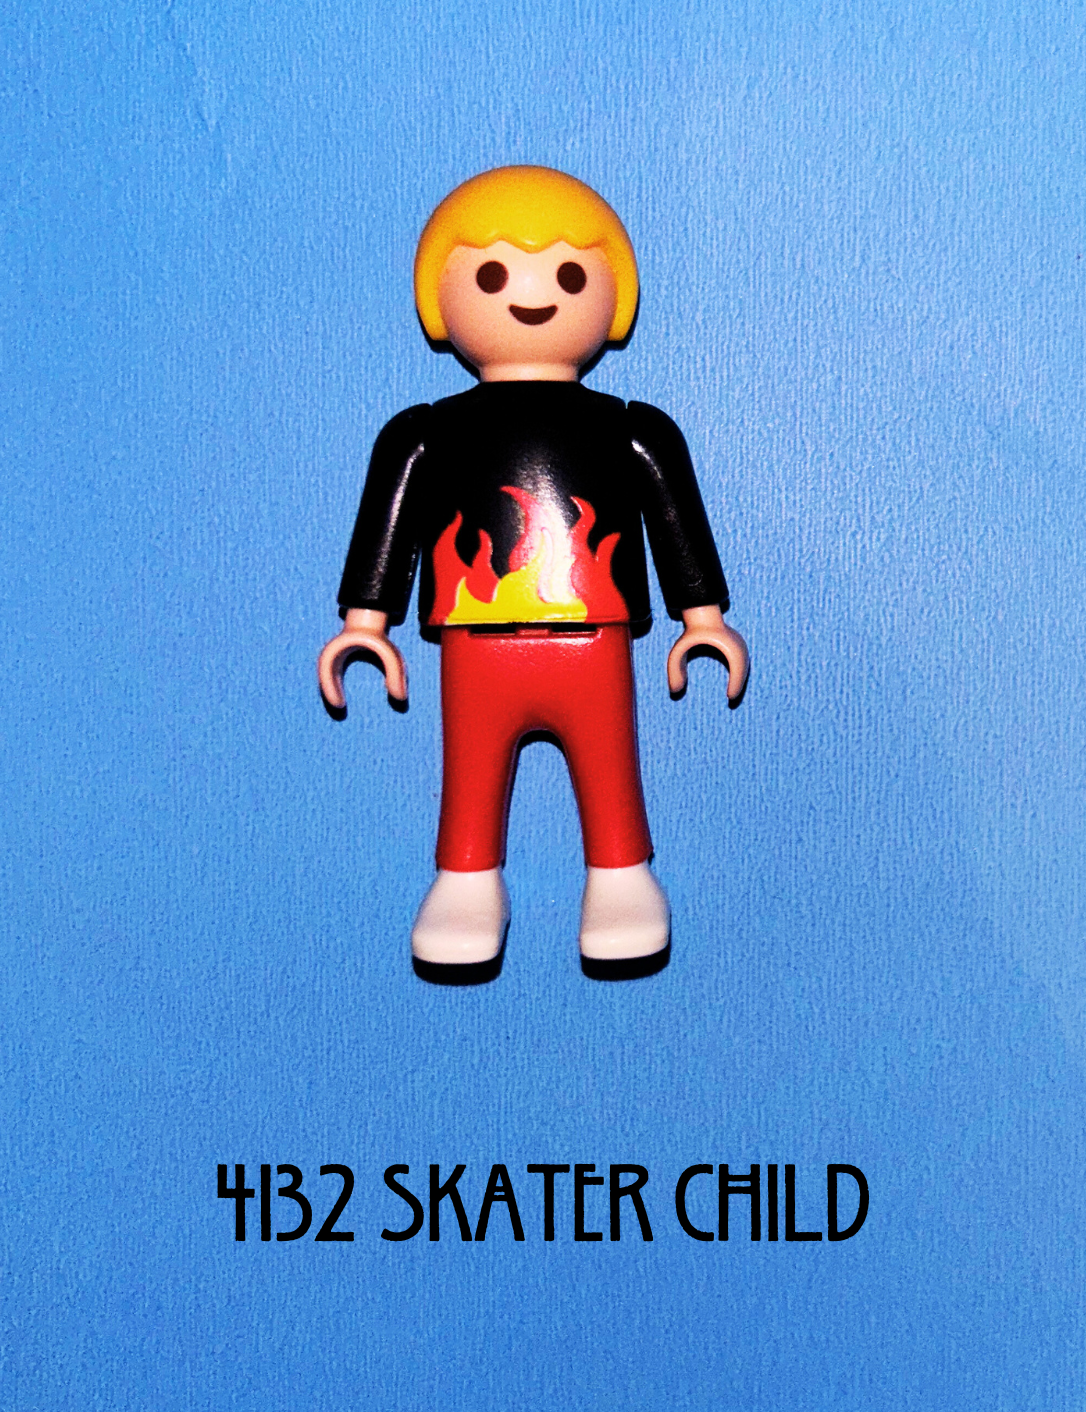 4132 Skater Child